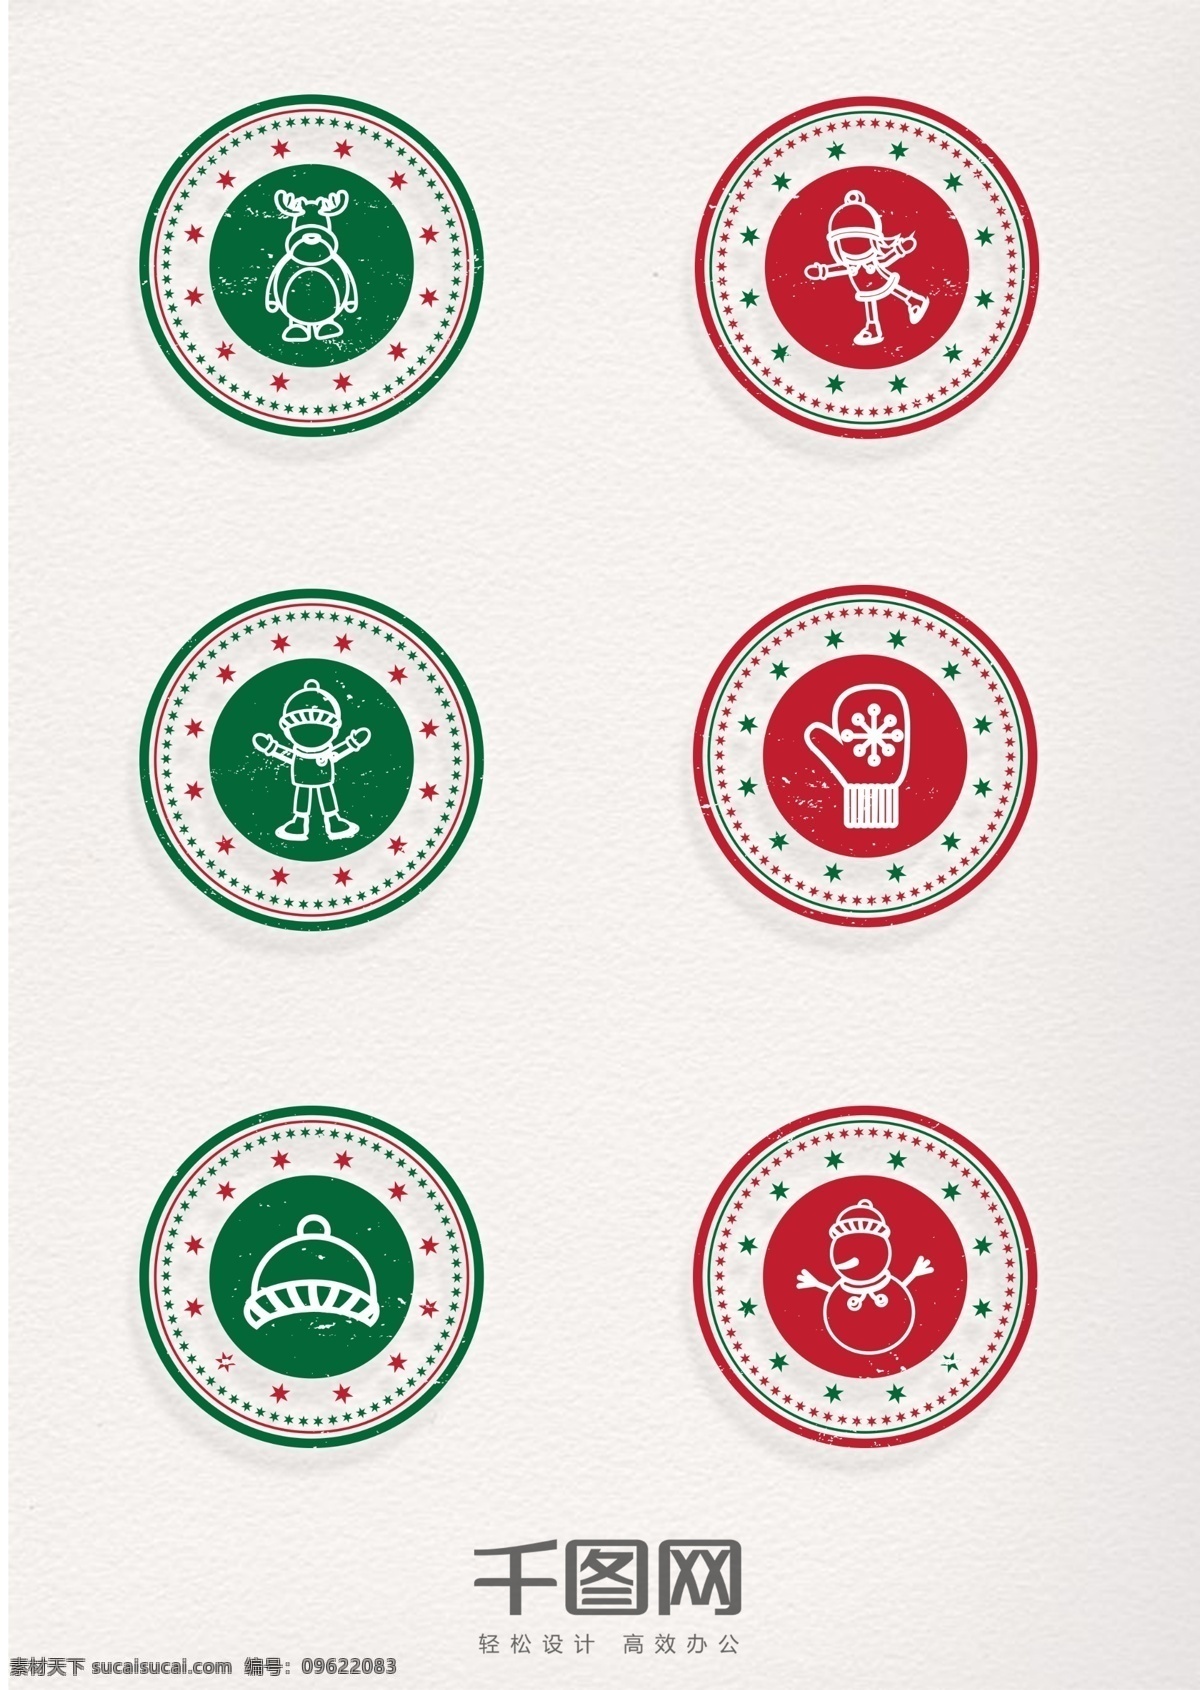 可爱 圣诞 元素 圆形 印章 卡通 红色 绿色 圣诞节 驯鹿 帽子 手套 雪人 孩子 儿童 圣诞印章